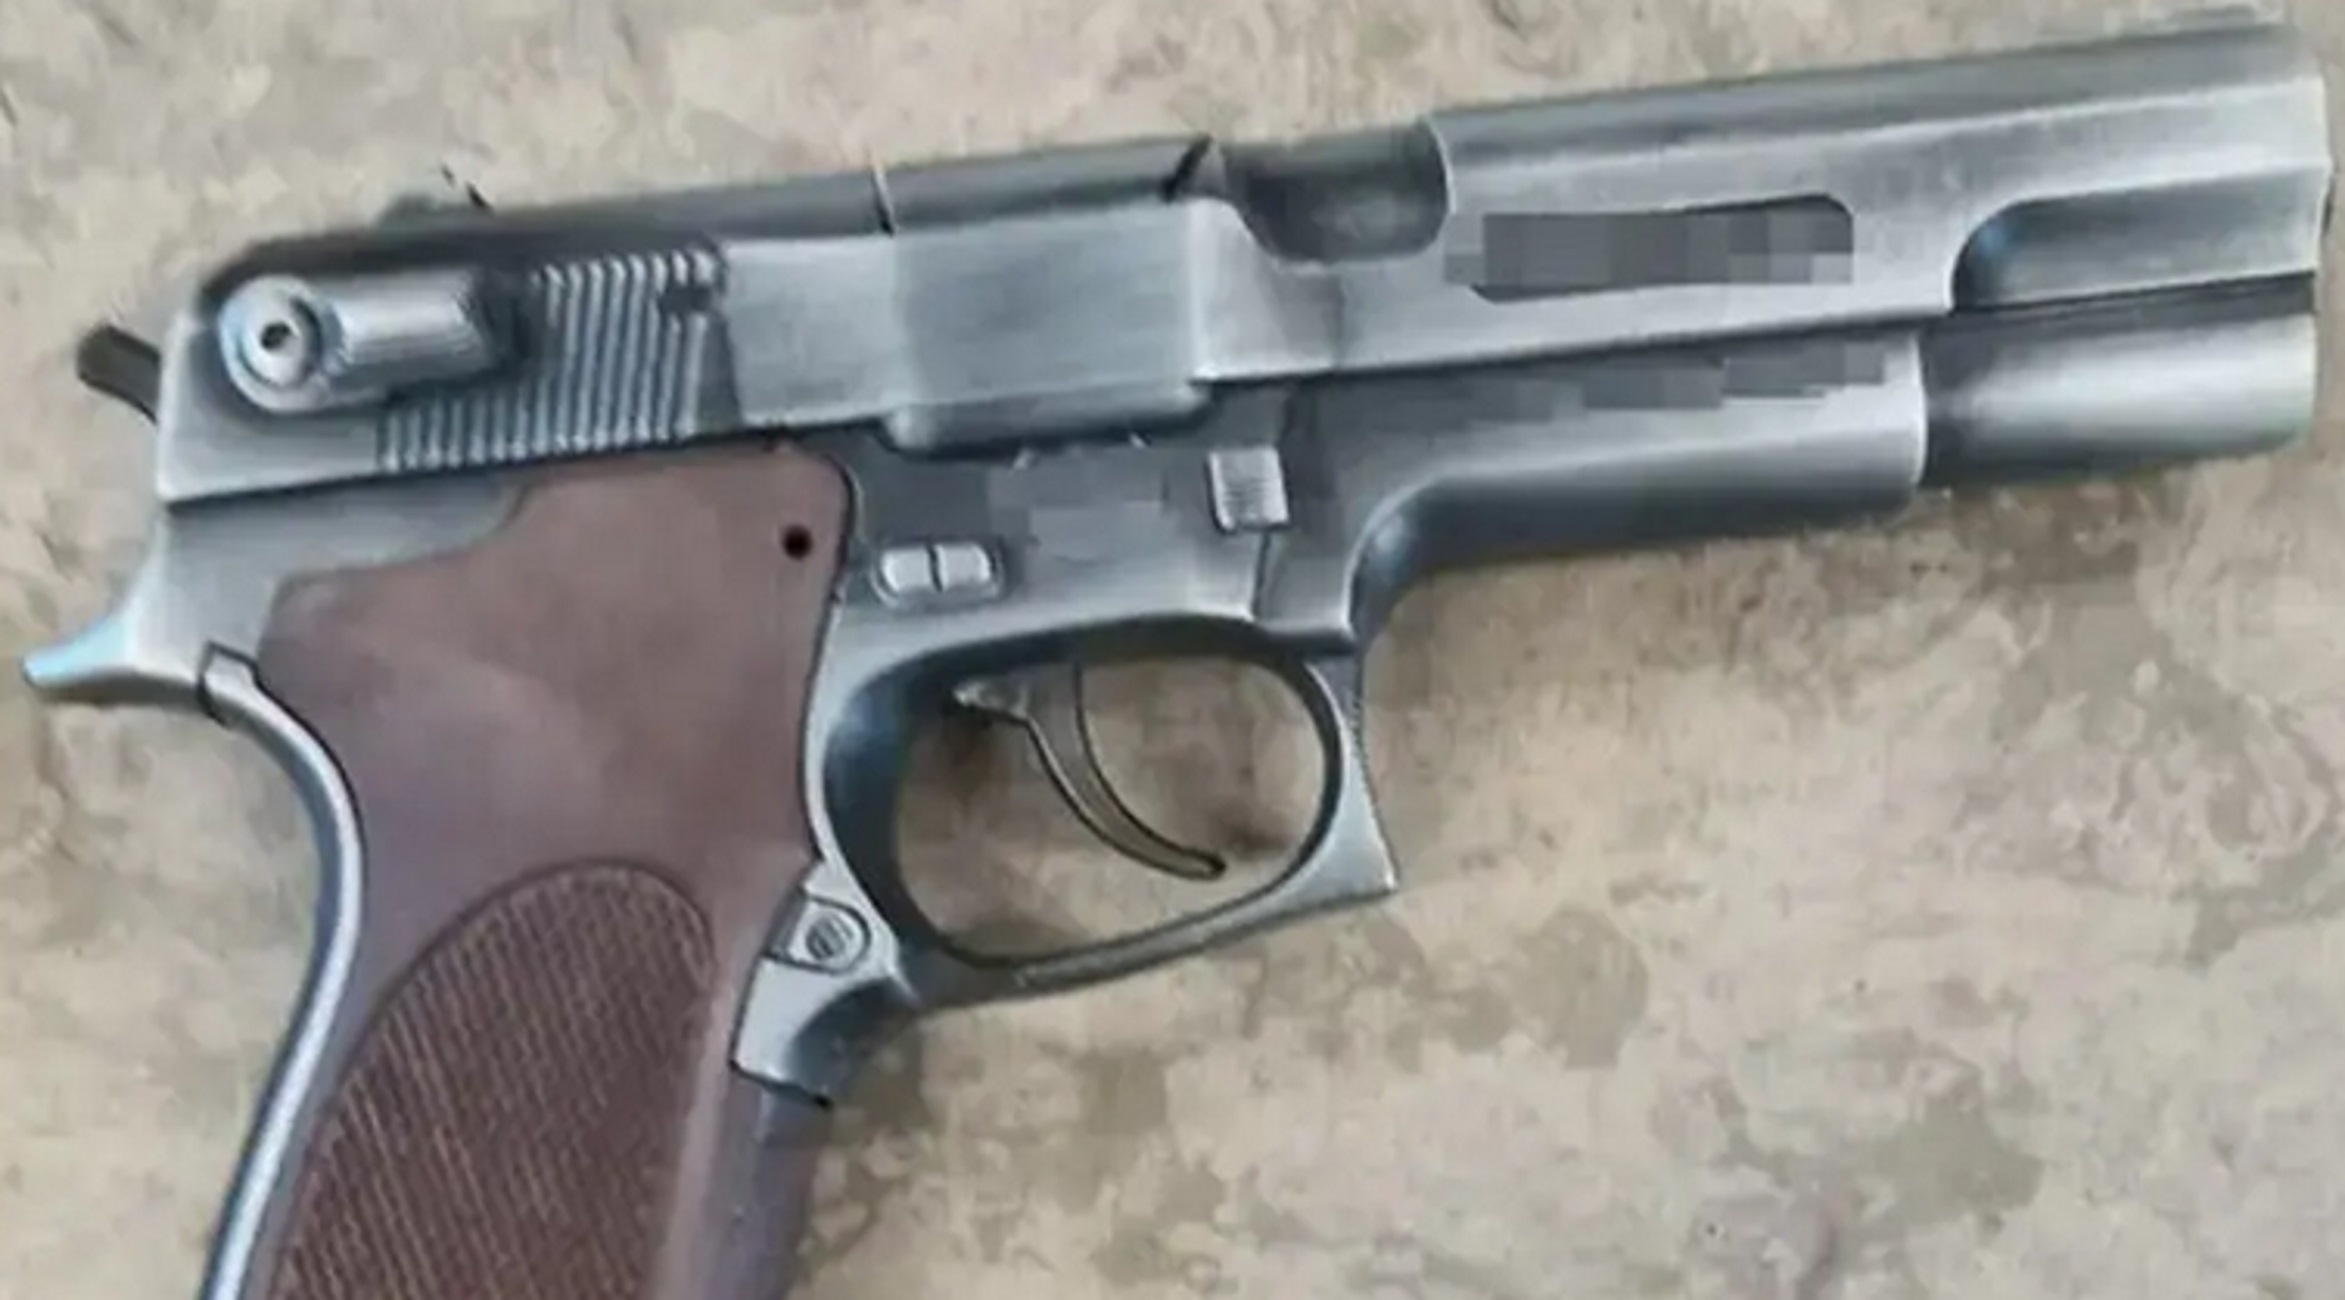 Θεσσαλονίκη: Λήστεψαν δύο καταστήματα με αυτό το πιστόλι «Replica» – Τρεις οι συλλήψεις